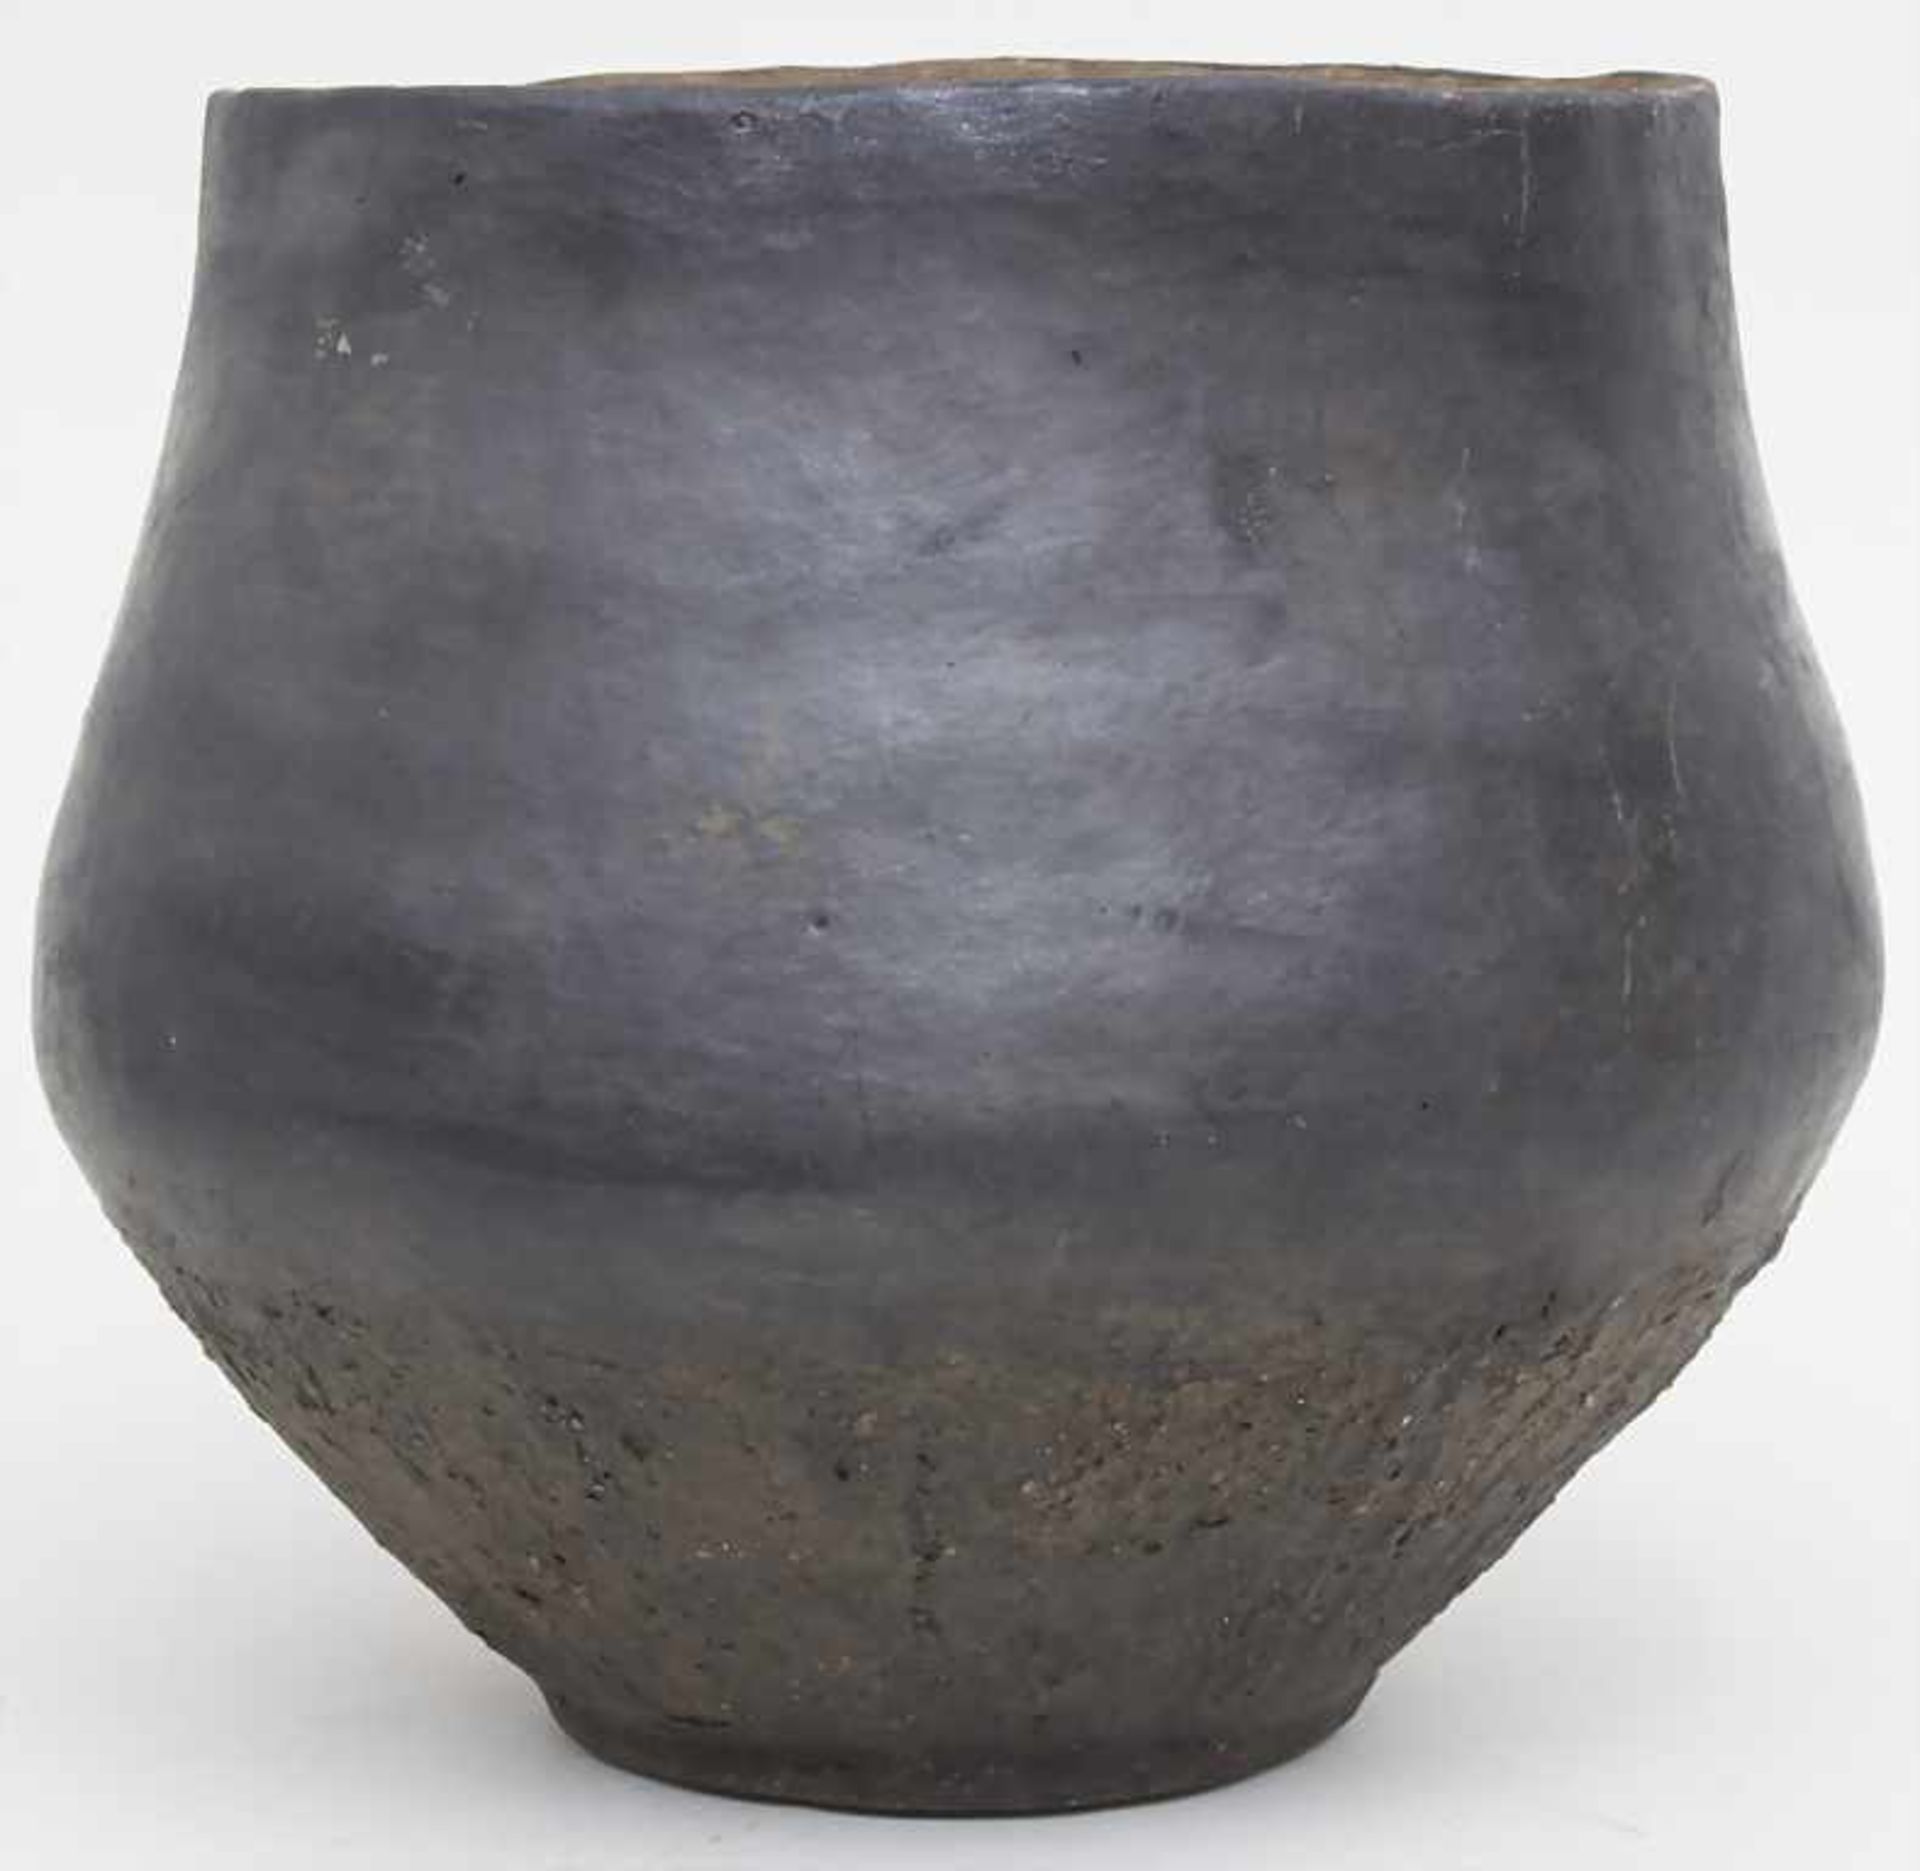 Bronzezeitliches Keramik-Gefäß / A Bronze Age ceramic vessel, Lausitzer Kultur, 9. - 6. Jh. v. Chr.